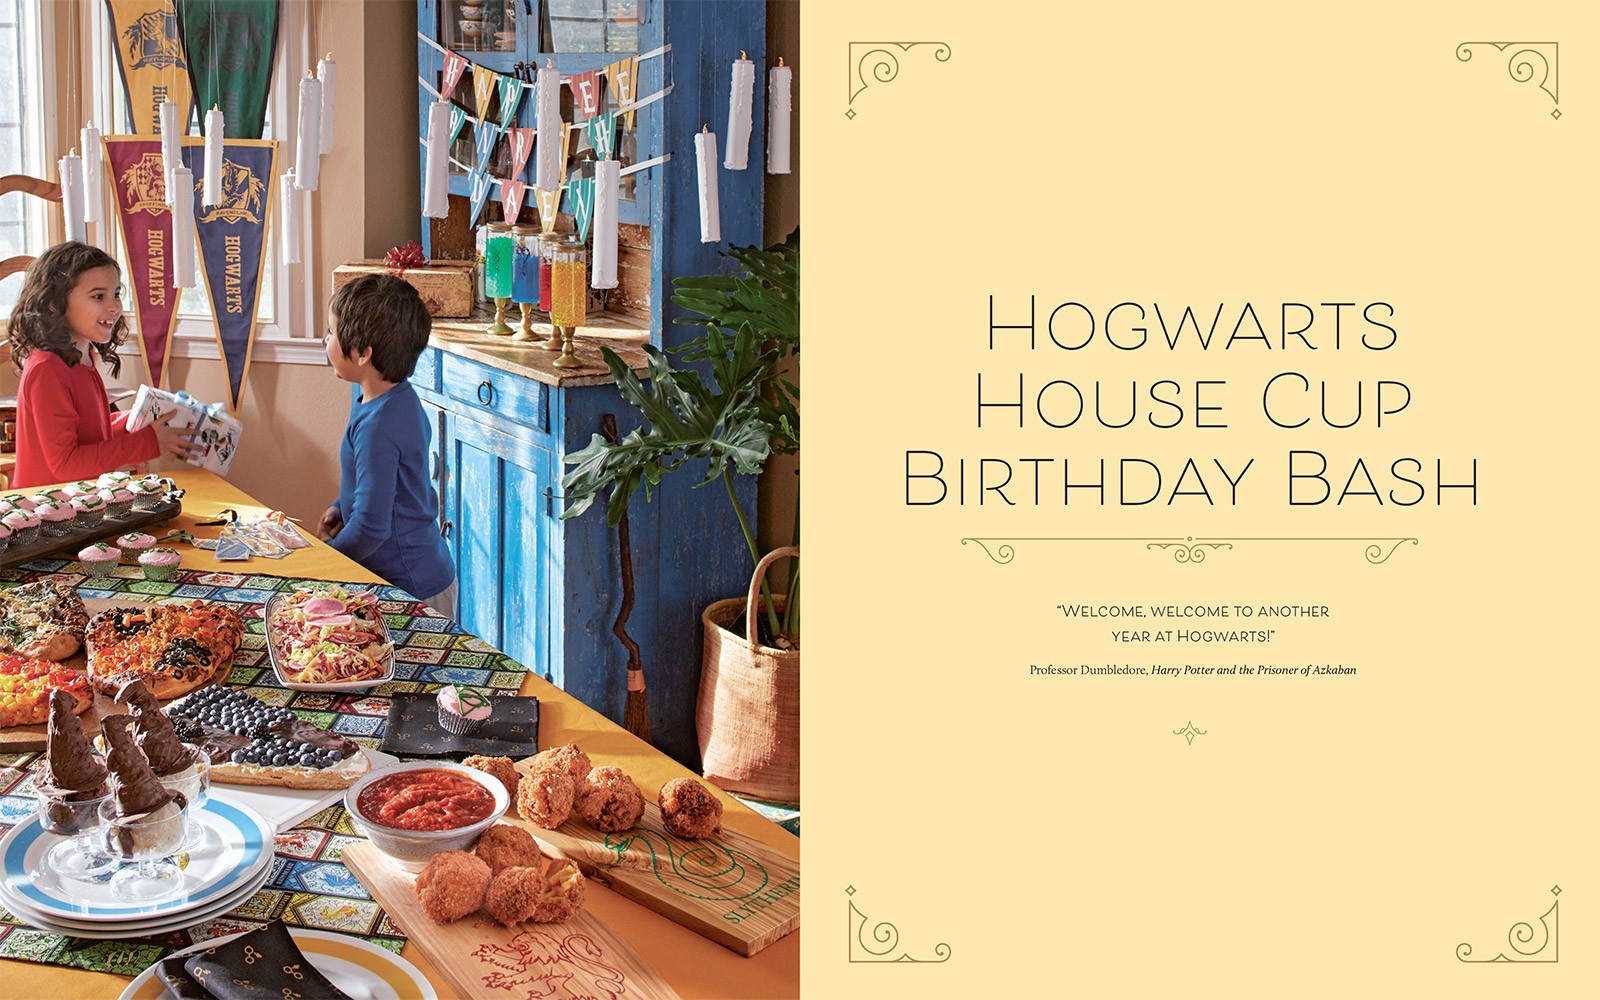 Harry Potter: Feasts & Festivities